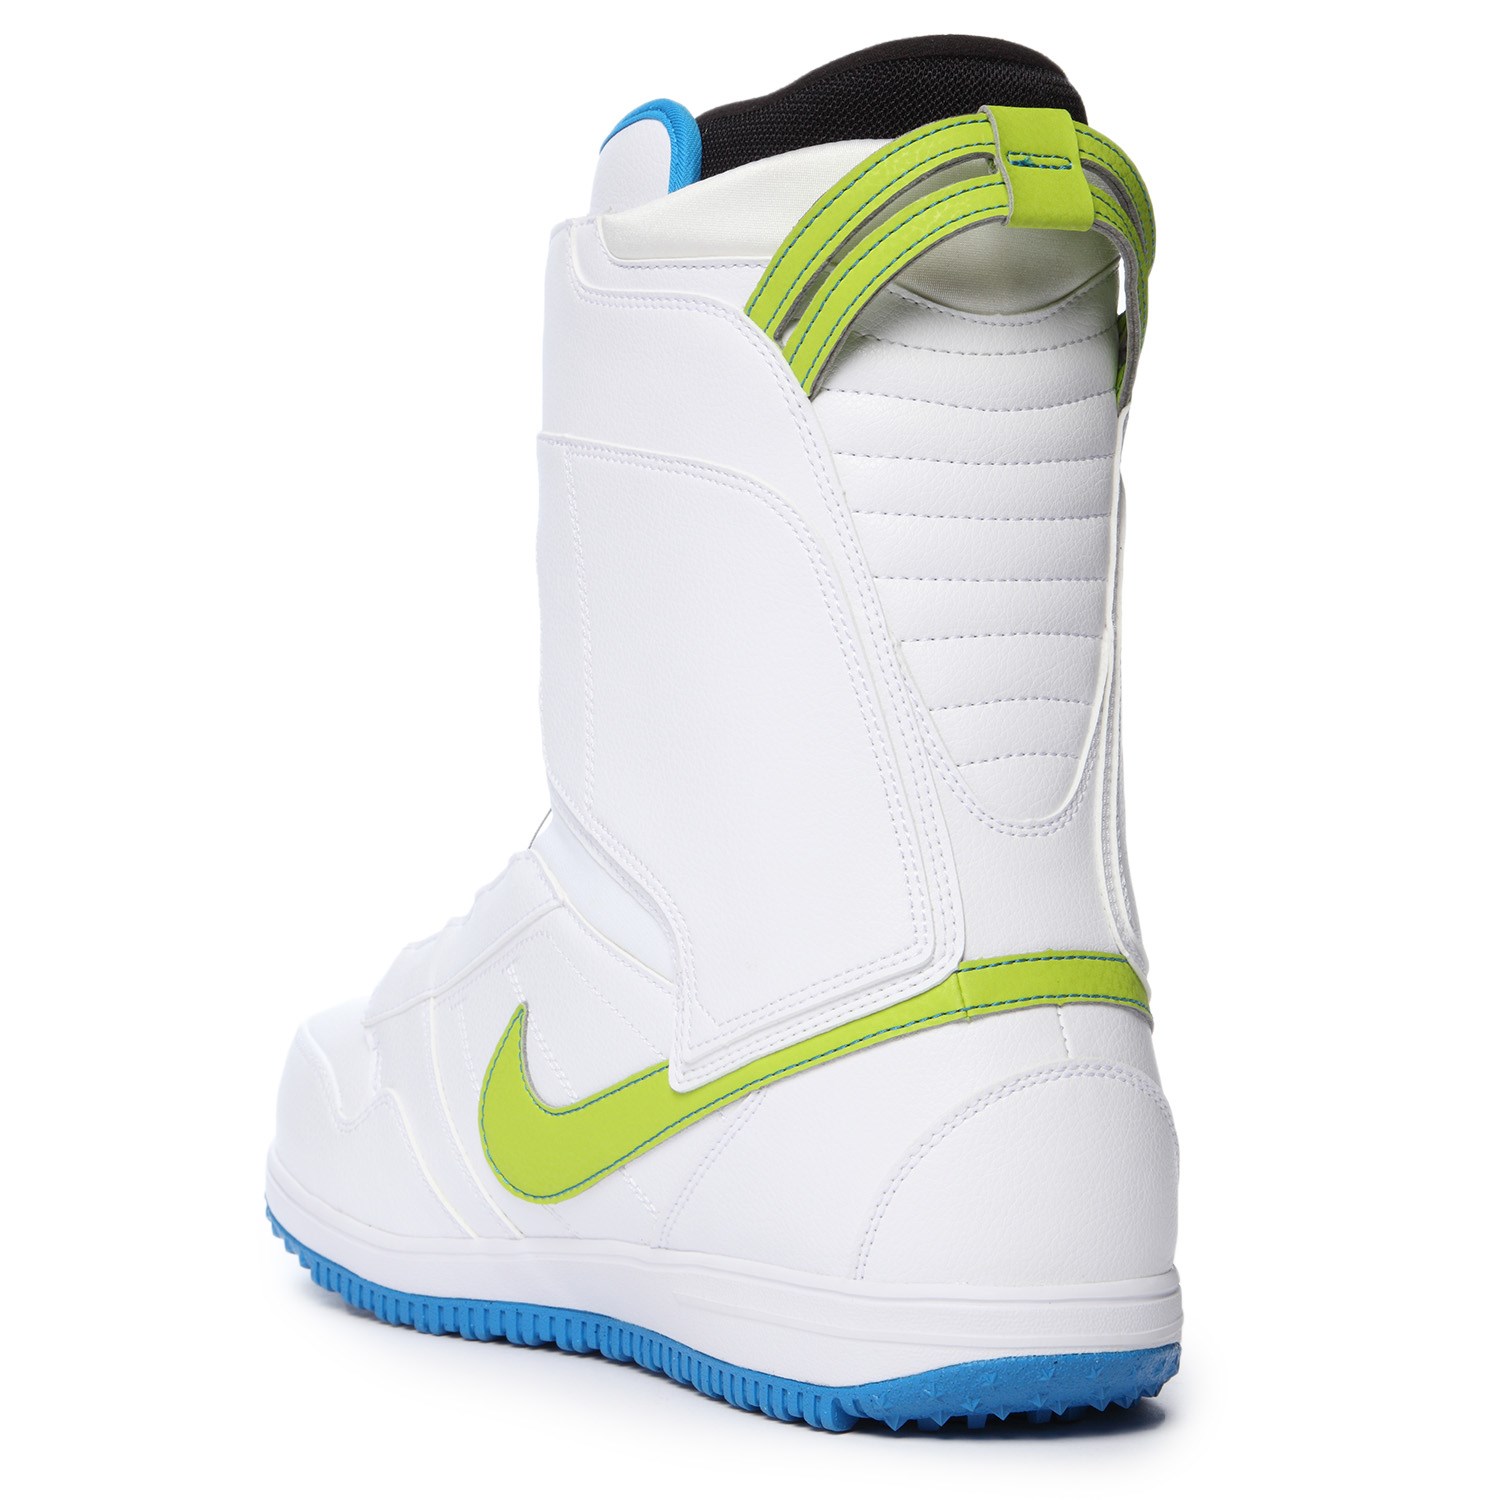 Zenuwinzinking Voornaamwoord onenigheid Nike SB Vapen Boa Snowboard Boots 2015 | evo